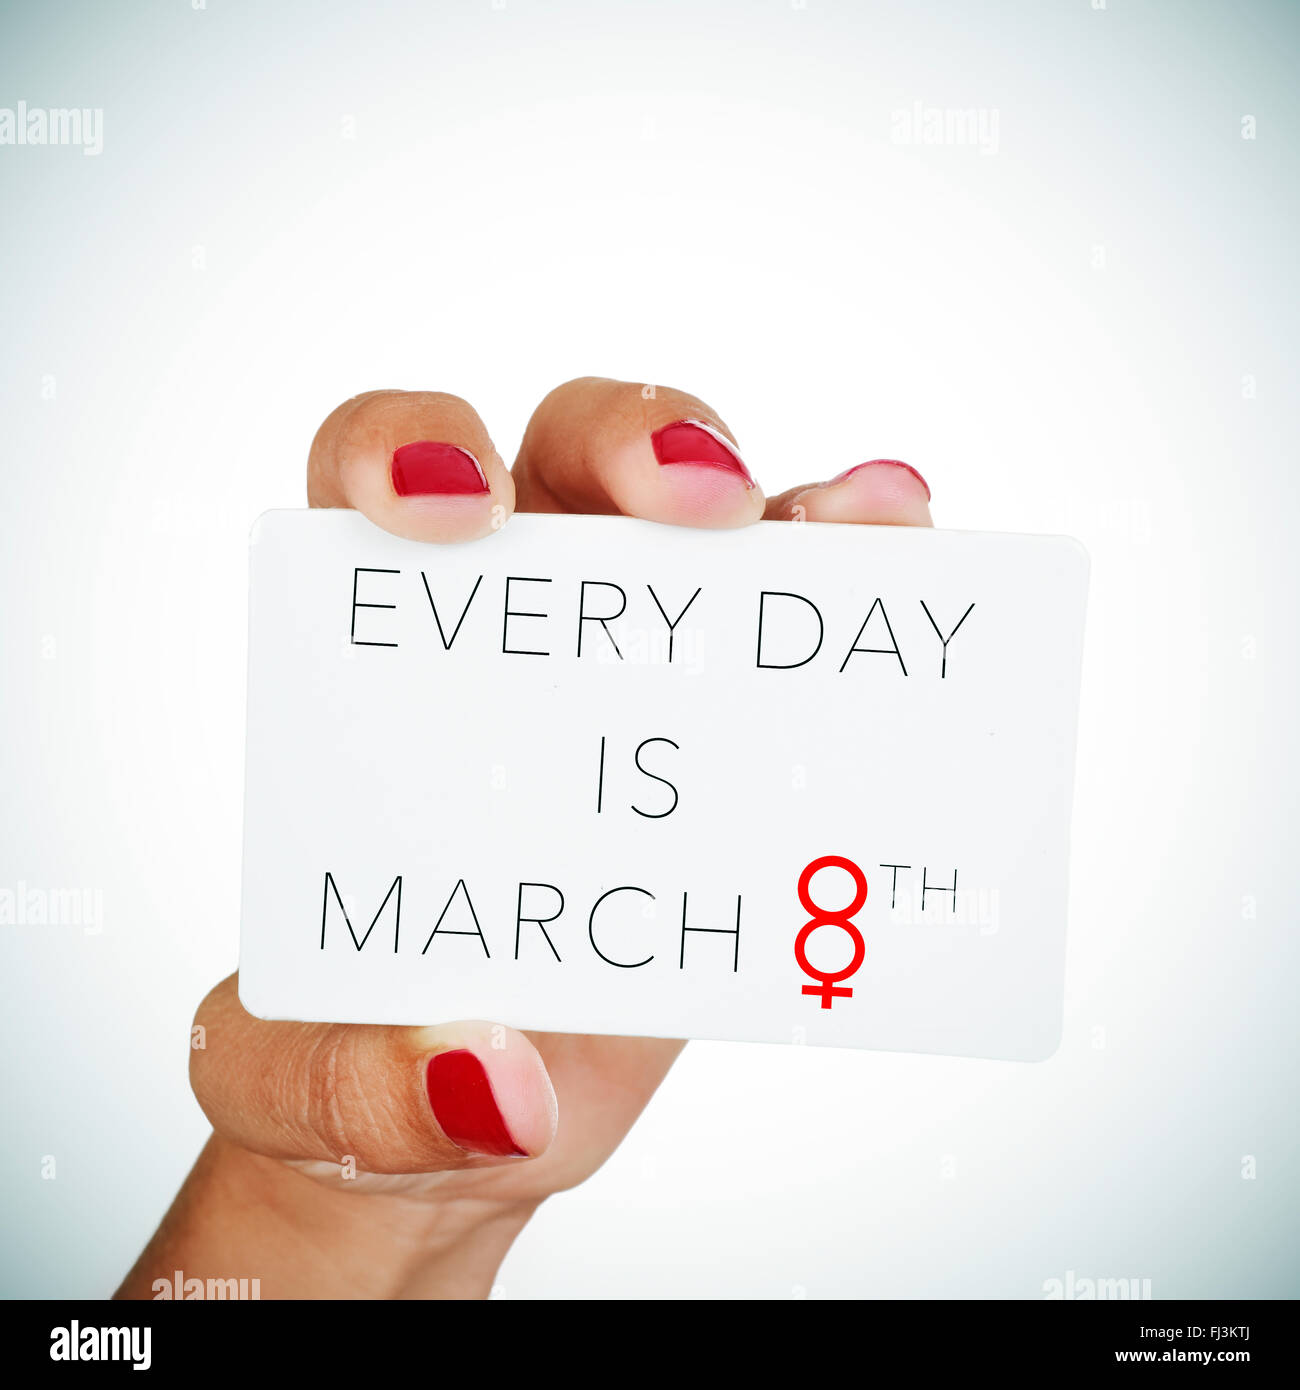 La mano de una mujer joven con clavos pulidos rojo sostiene un cartel con el texto cada día es el 8 de marzo, con el número 8 Foto de stock